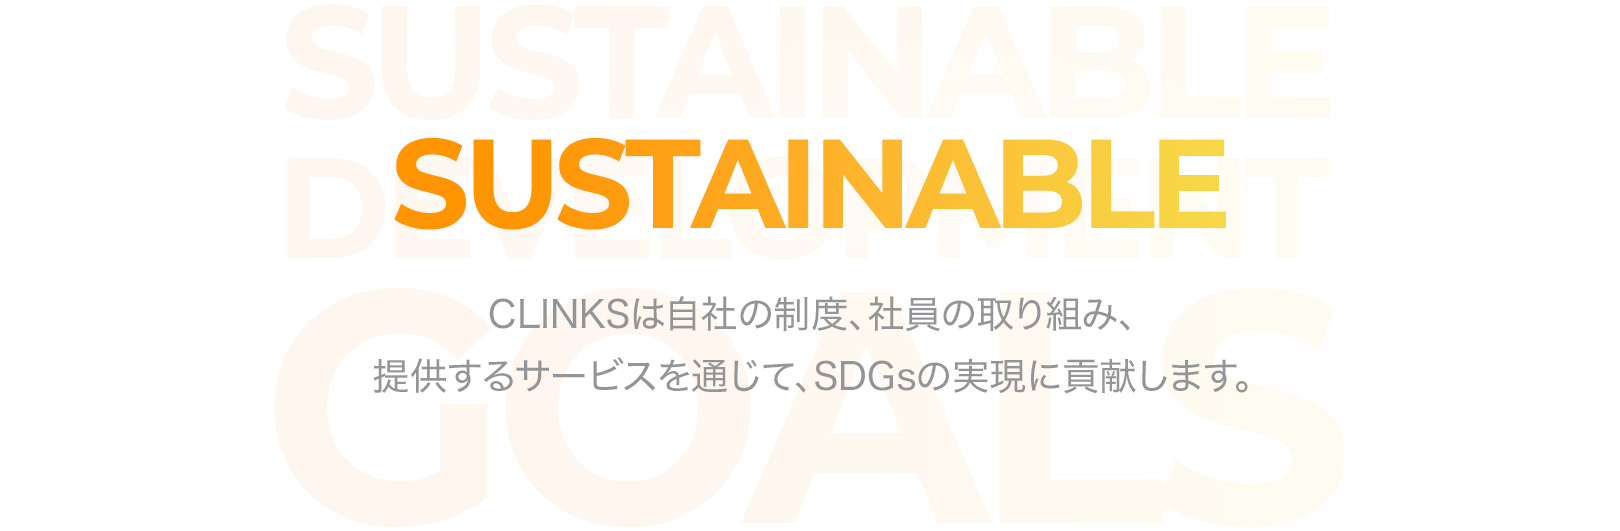 SUSTAINABLE CLINKSは自社の制度、社員の取り組み、提供するサービスを通じて、SDGsの実現に貢献します。